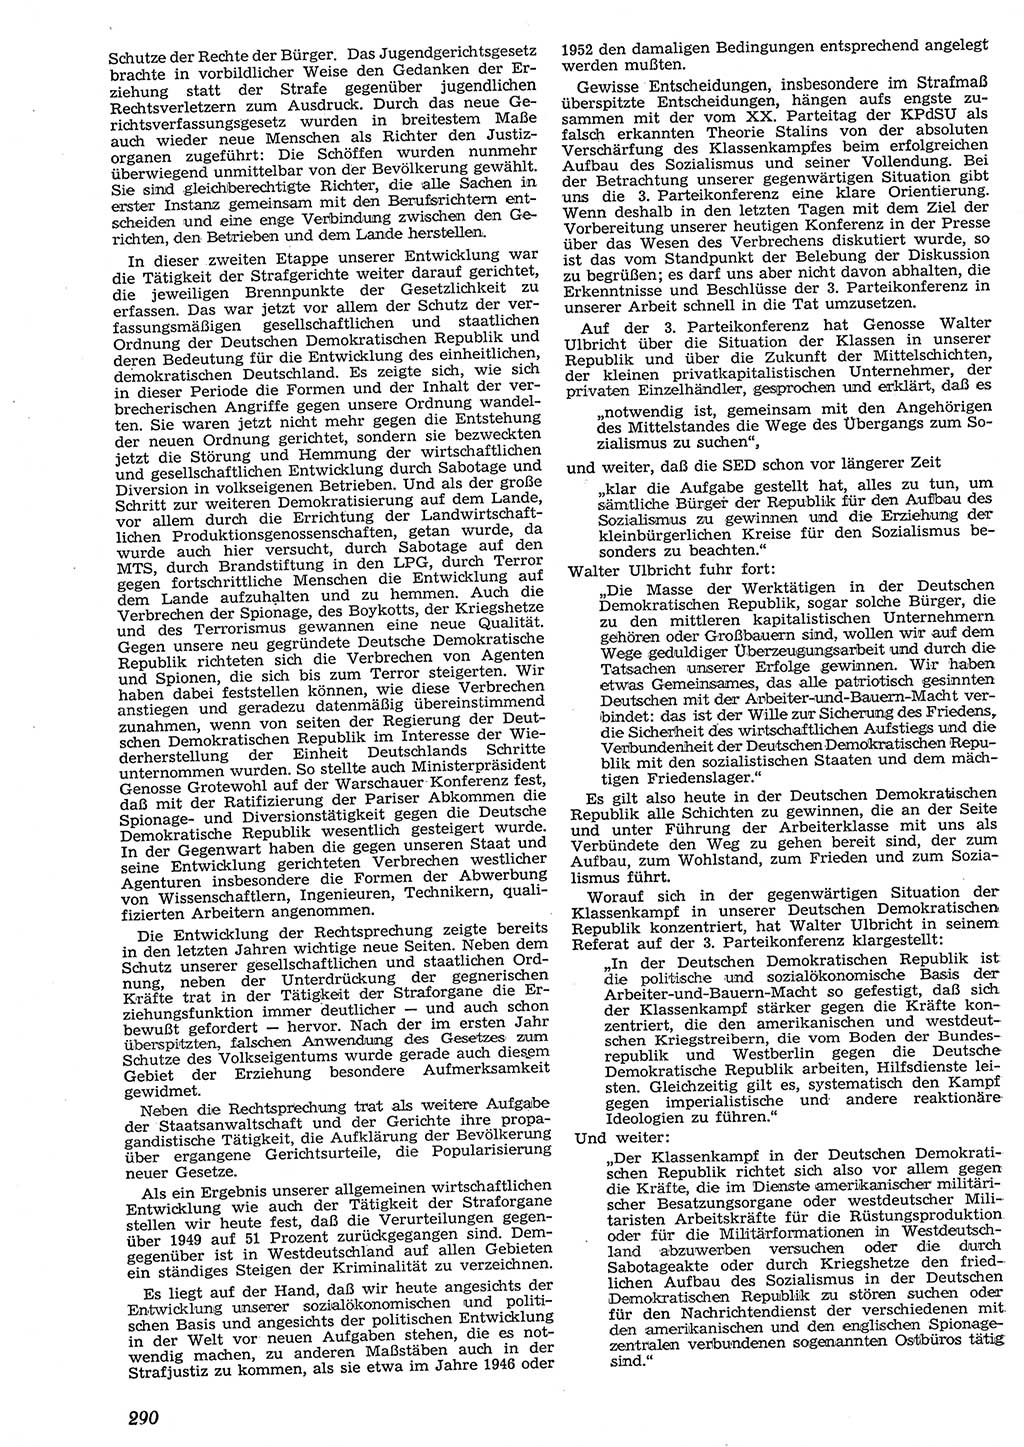 Neue Justiz (NJ), Zeitschrift für Recht und Rechtswissenschaft [Deutsche Demokratische Republik (DDR)], 10. Jahrgang 1956, Seite 290 (NJ DDR 1956, S. 290)